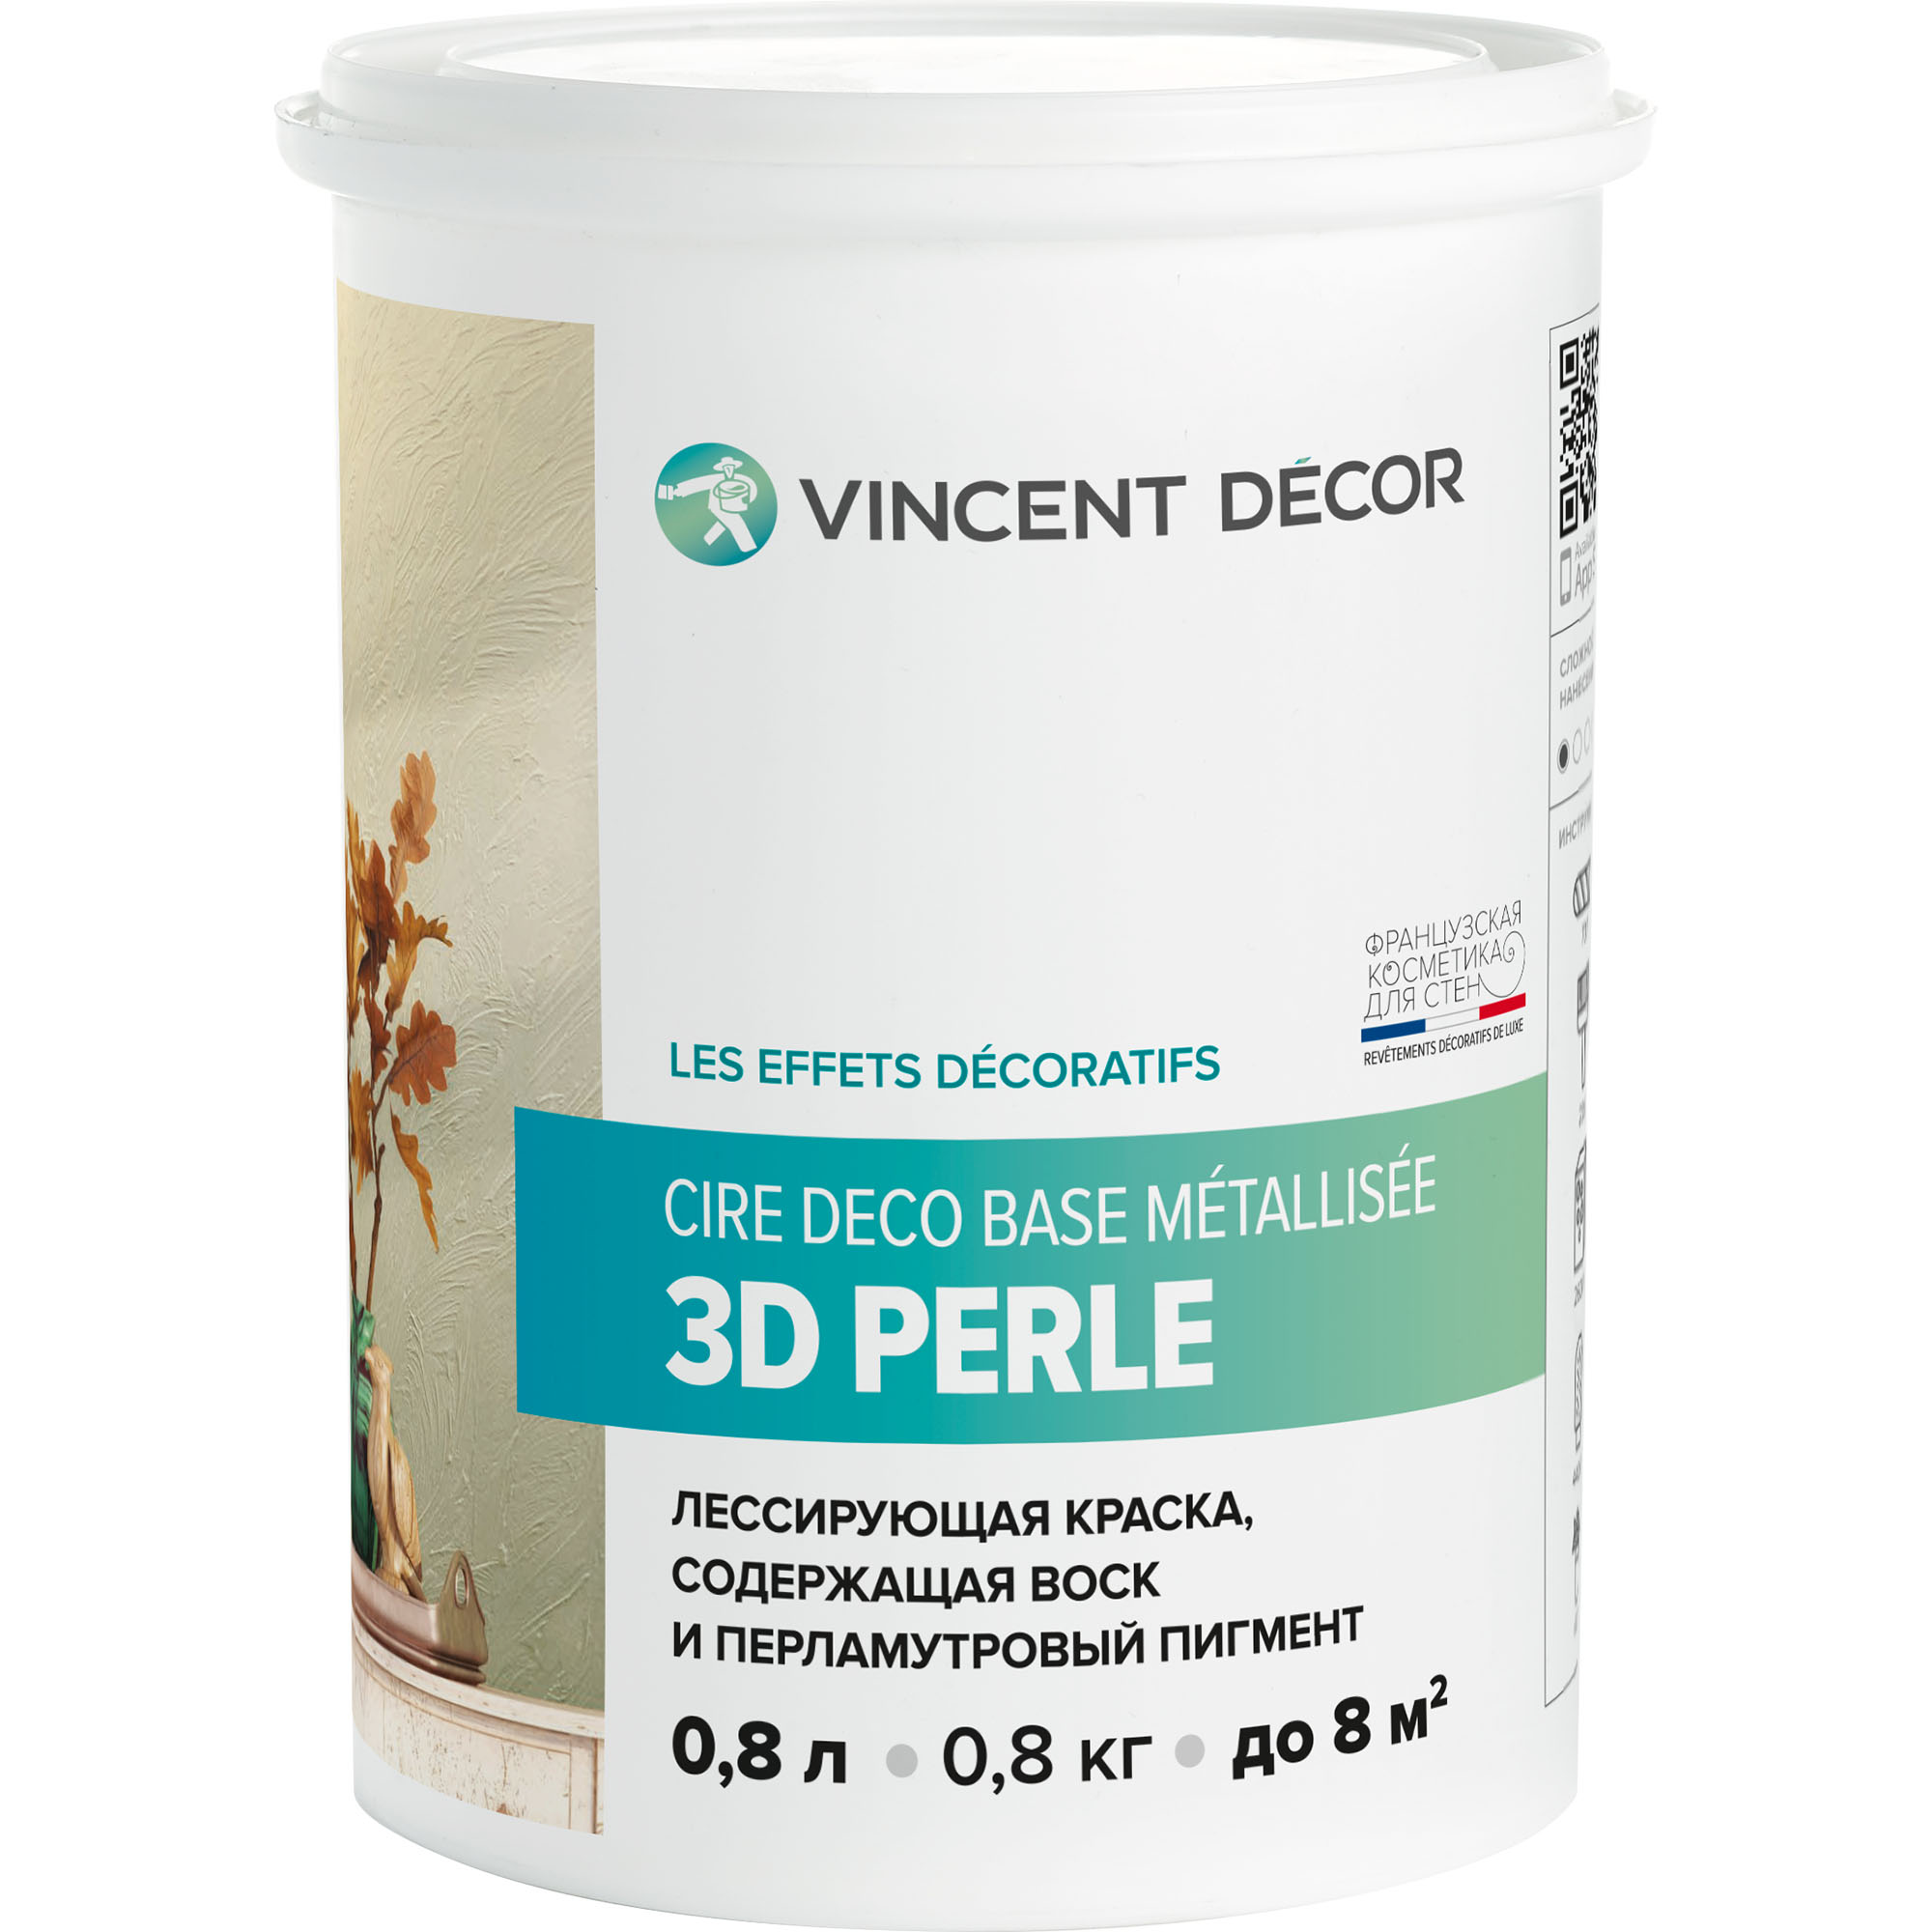 Краска лессирующая для декоративных покрытий Vincent Decor Cire deco base Metallisee 3D Perle золотистый перламутр 0,8 л лак защитный для декоративных покрытий vincent decor decorum vernis полуматовый 2 5 л